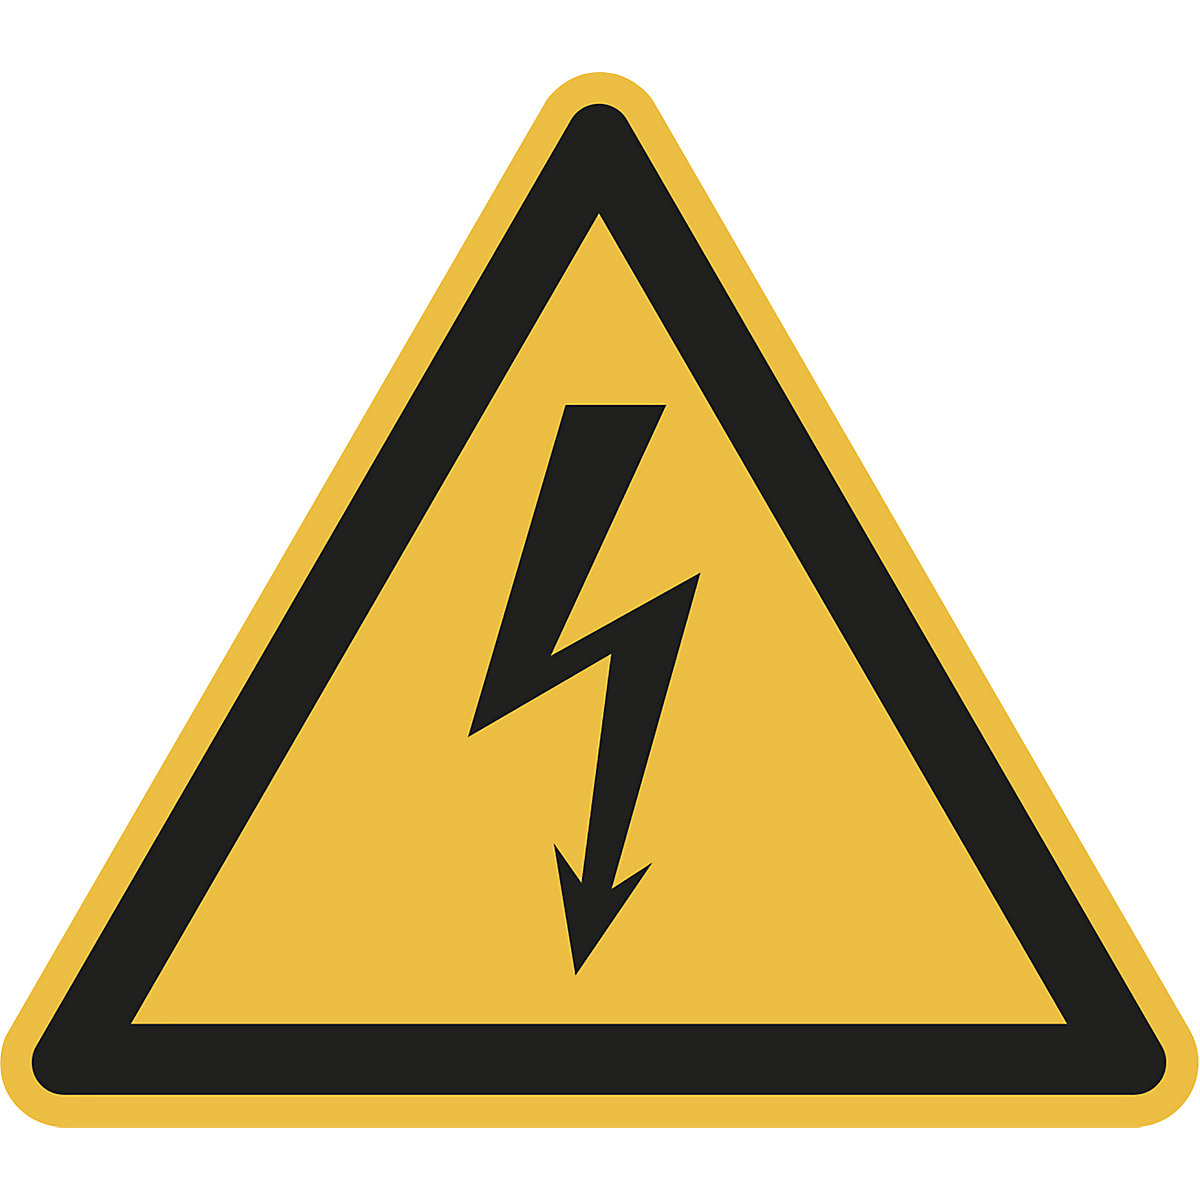 Výstražná značka, výstraha před nebezpečným elektrickým napětím, bal.j. 10 ks, fólie, délka ramene 200 mm